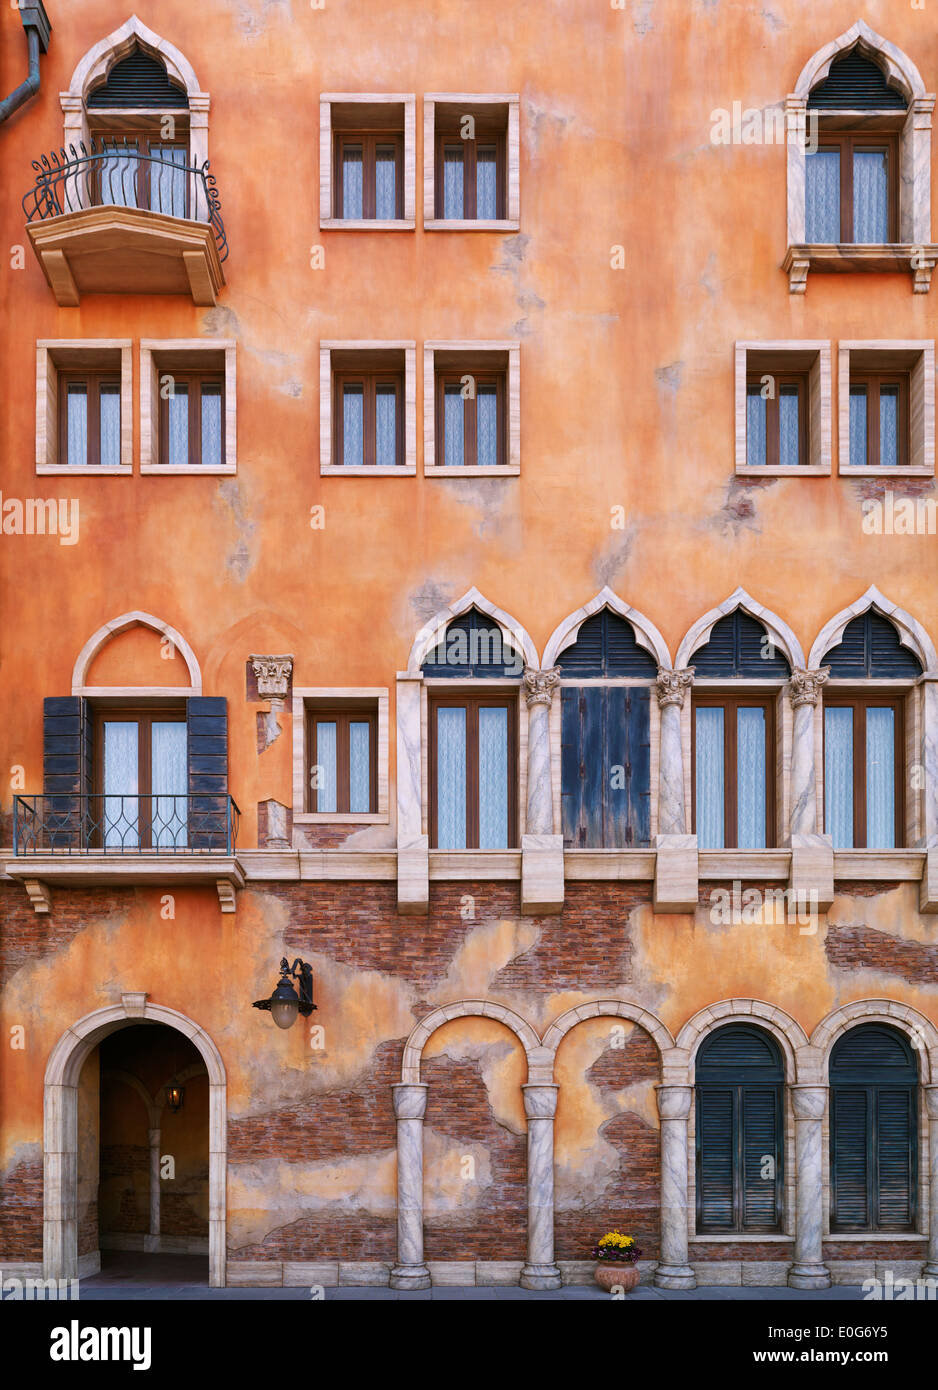 Mur avec des fenêtres d'un bâtiment dans un style architectural gothique vénitien. Détail de l'architecture de texture. Banque D'Images